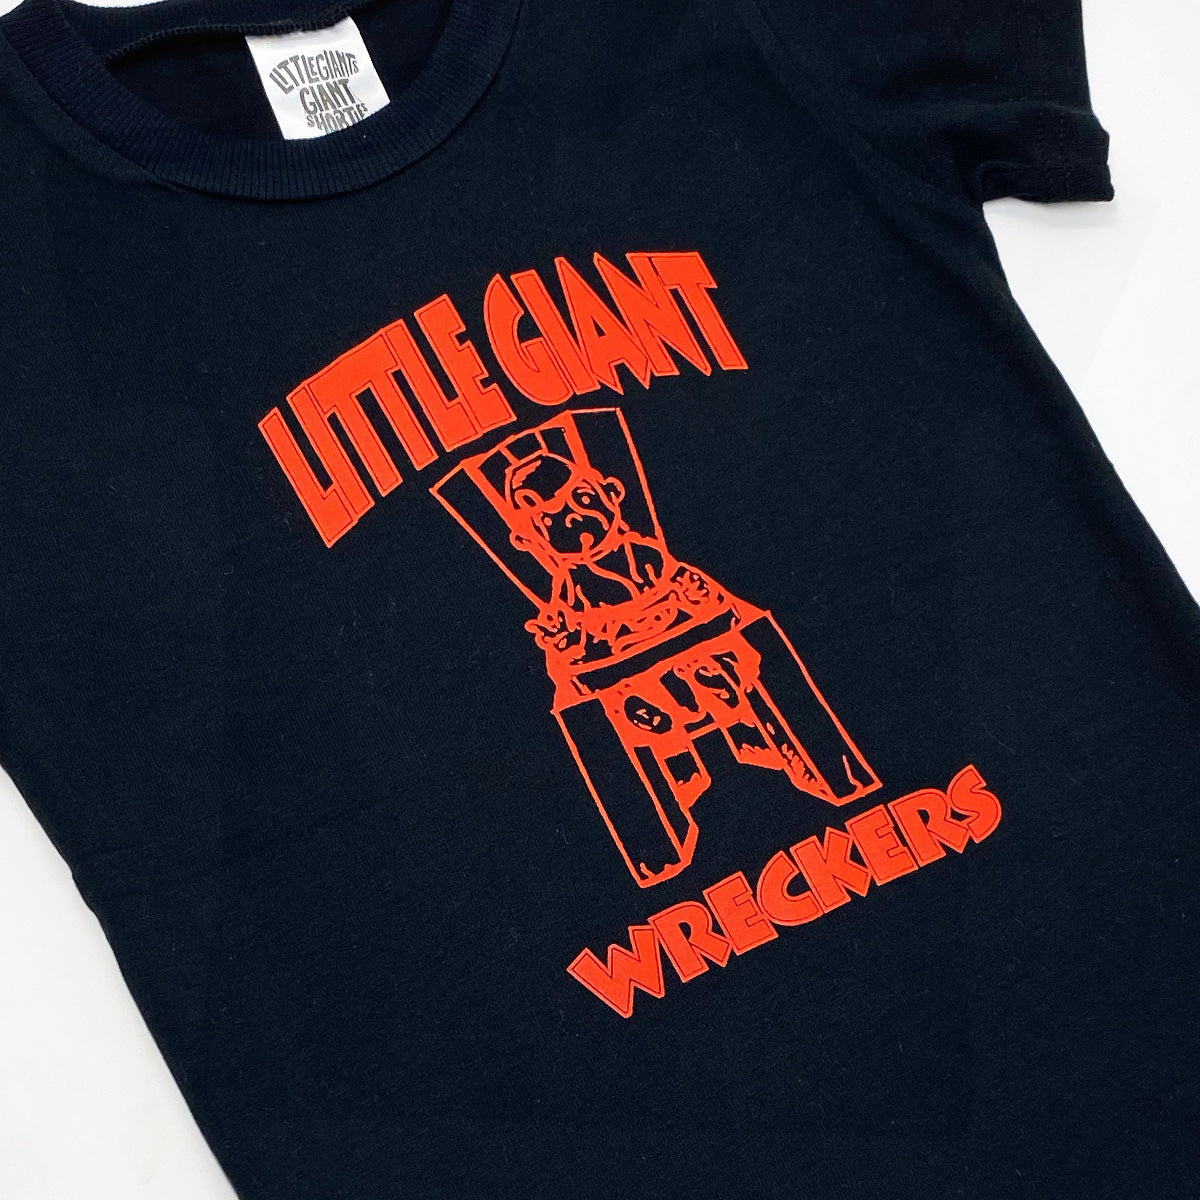 Little Wreckers T-Shirt (Black)